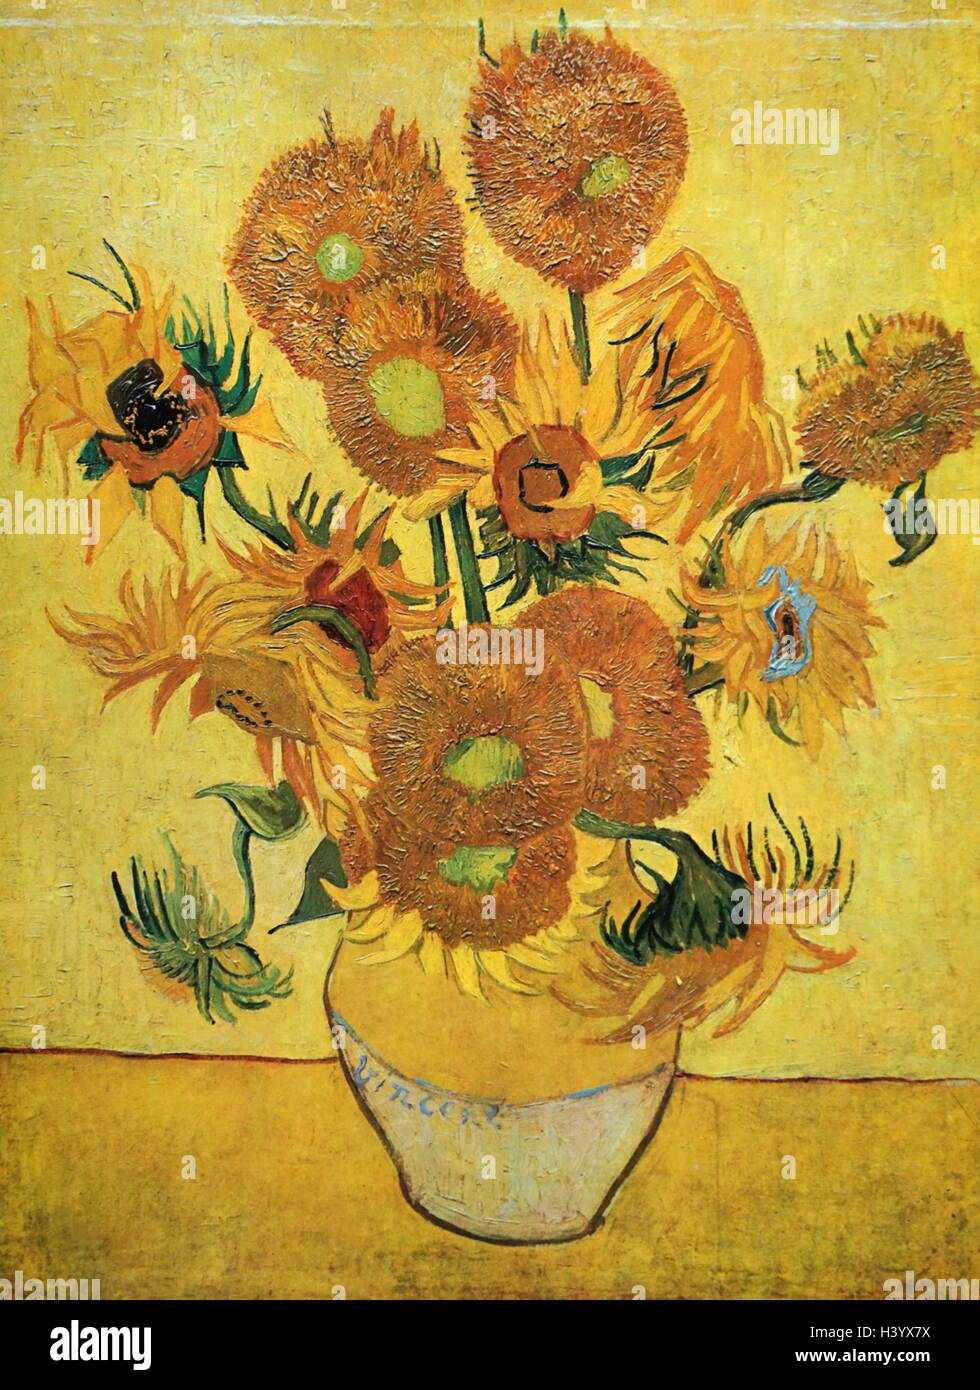 Pintura titulada 'unflowers' de Vincent van Gogh (1853-1890) pintor postimpresionista holandés. Fecha del siglo XIX Foto de stock